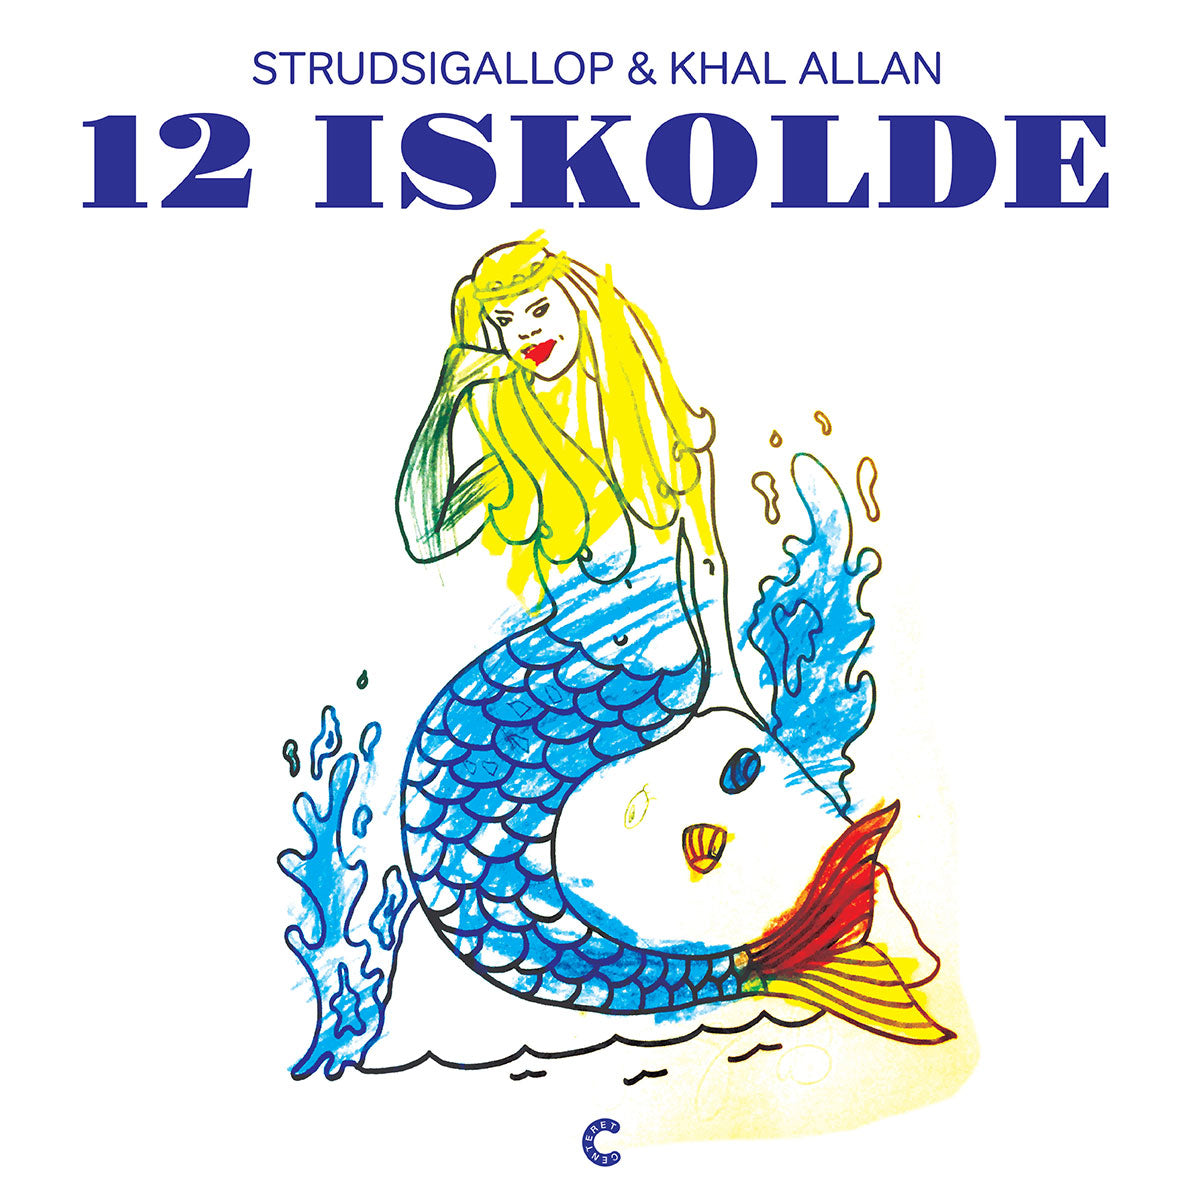 Strudsigallop & Khal Allan - 12 Iskolde